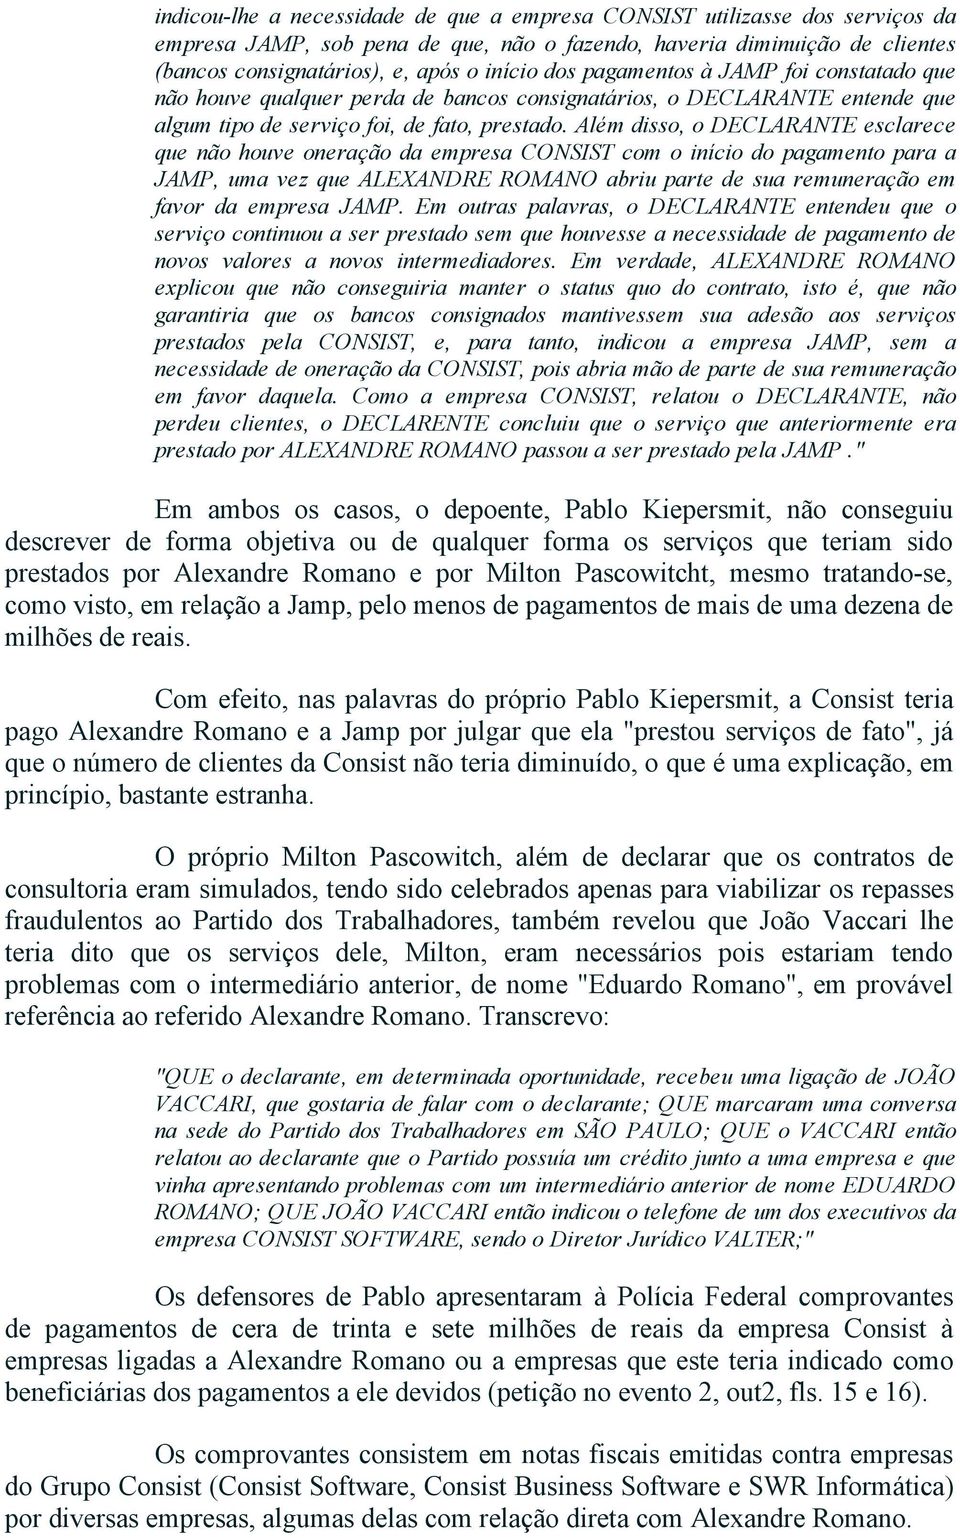 Além disso, o DECLARANTE esclarece que não houve oneração da empresa CONSIST com o início do pagamento para a JAMP, uma vez que ALEXANDRE ROMANO abriu parte de sua remuneração em favor da empresa